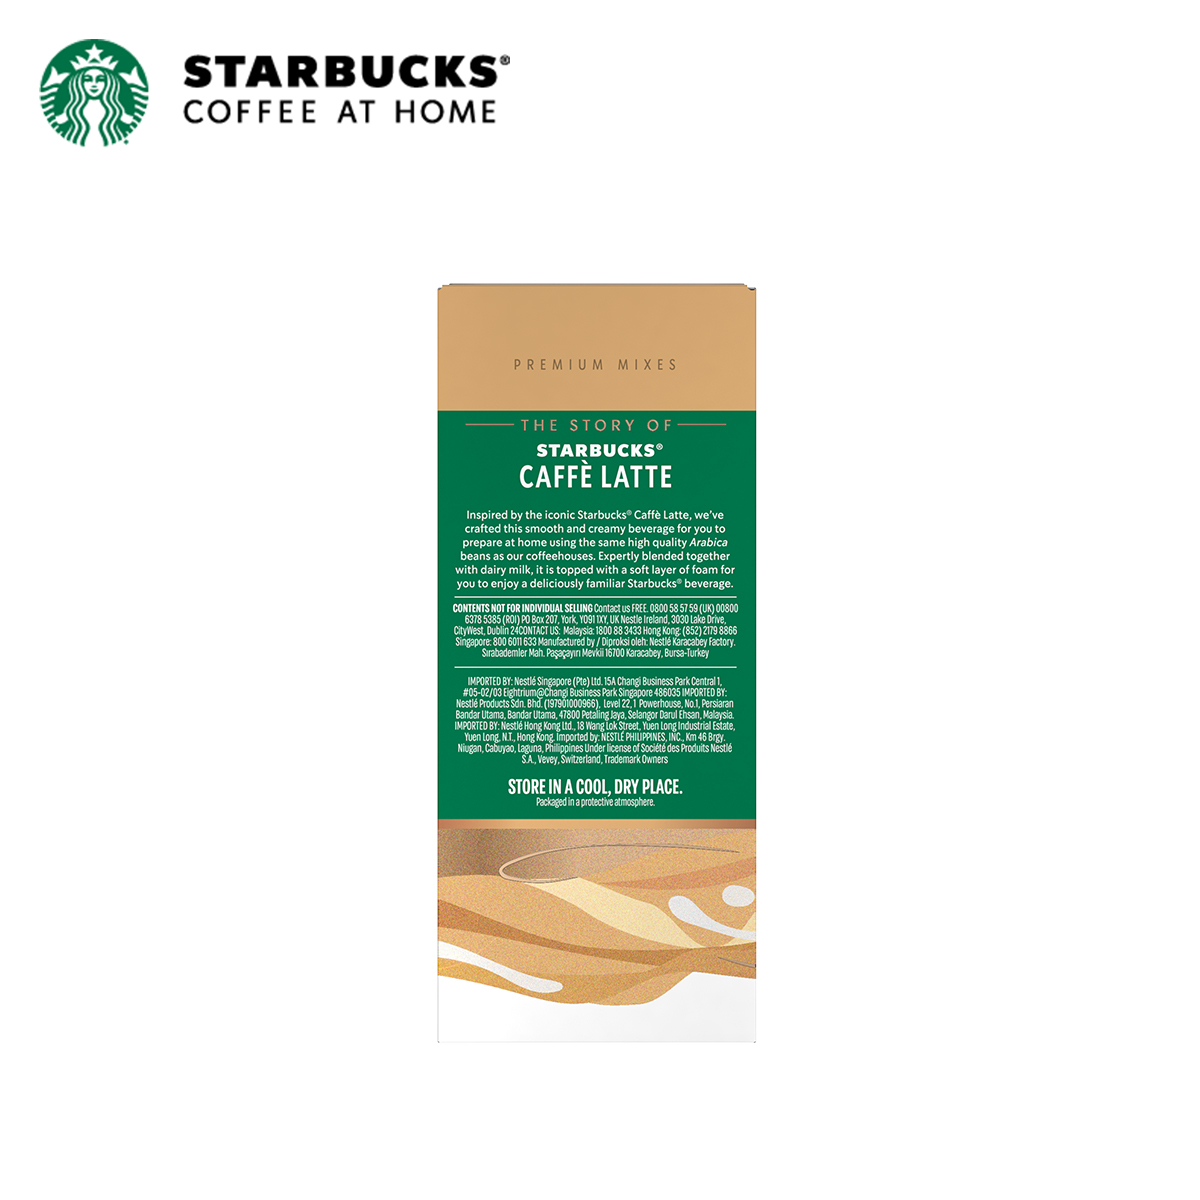 [QUÀ TẶNG ÁP DỤNG TỪ 09.09 - 11.09] Combo 2 Hộp Cà phê hòa tan cao cấp Starbucks Caffè Latte...